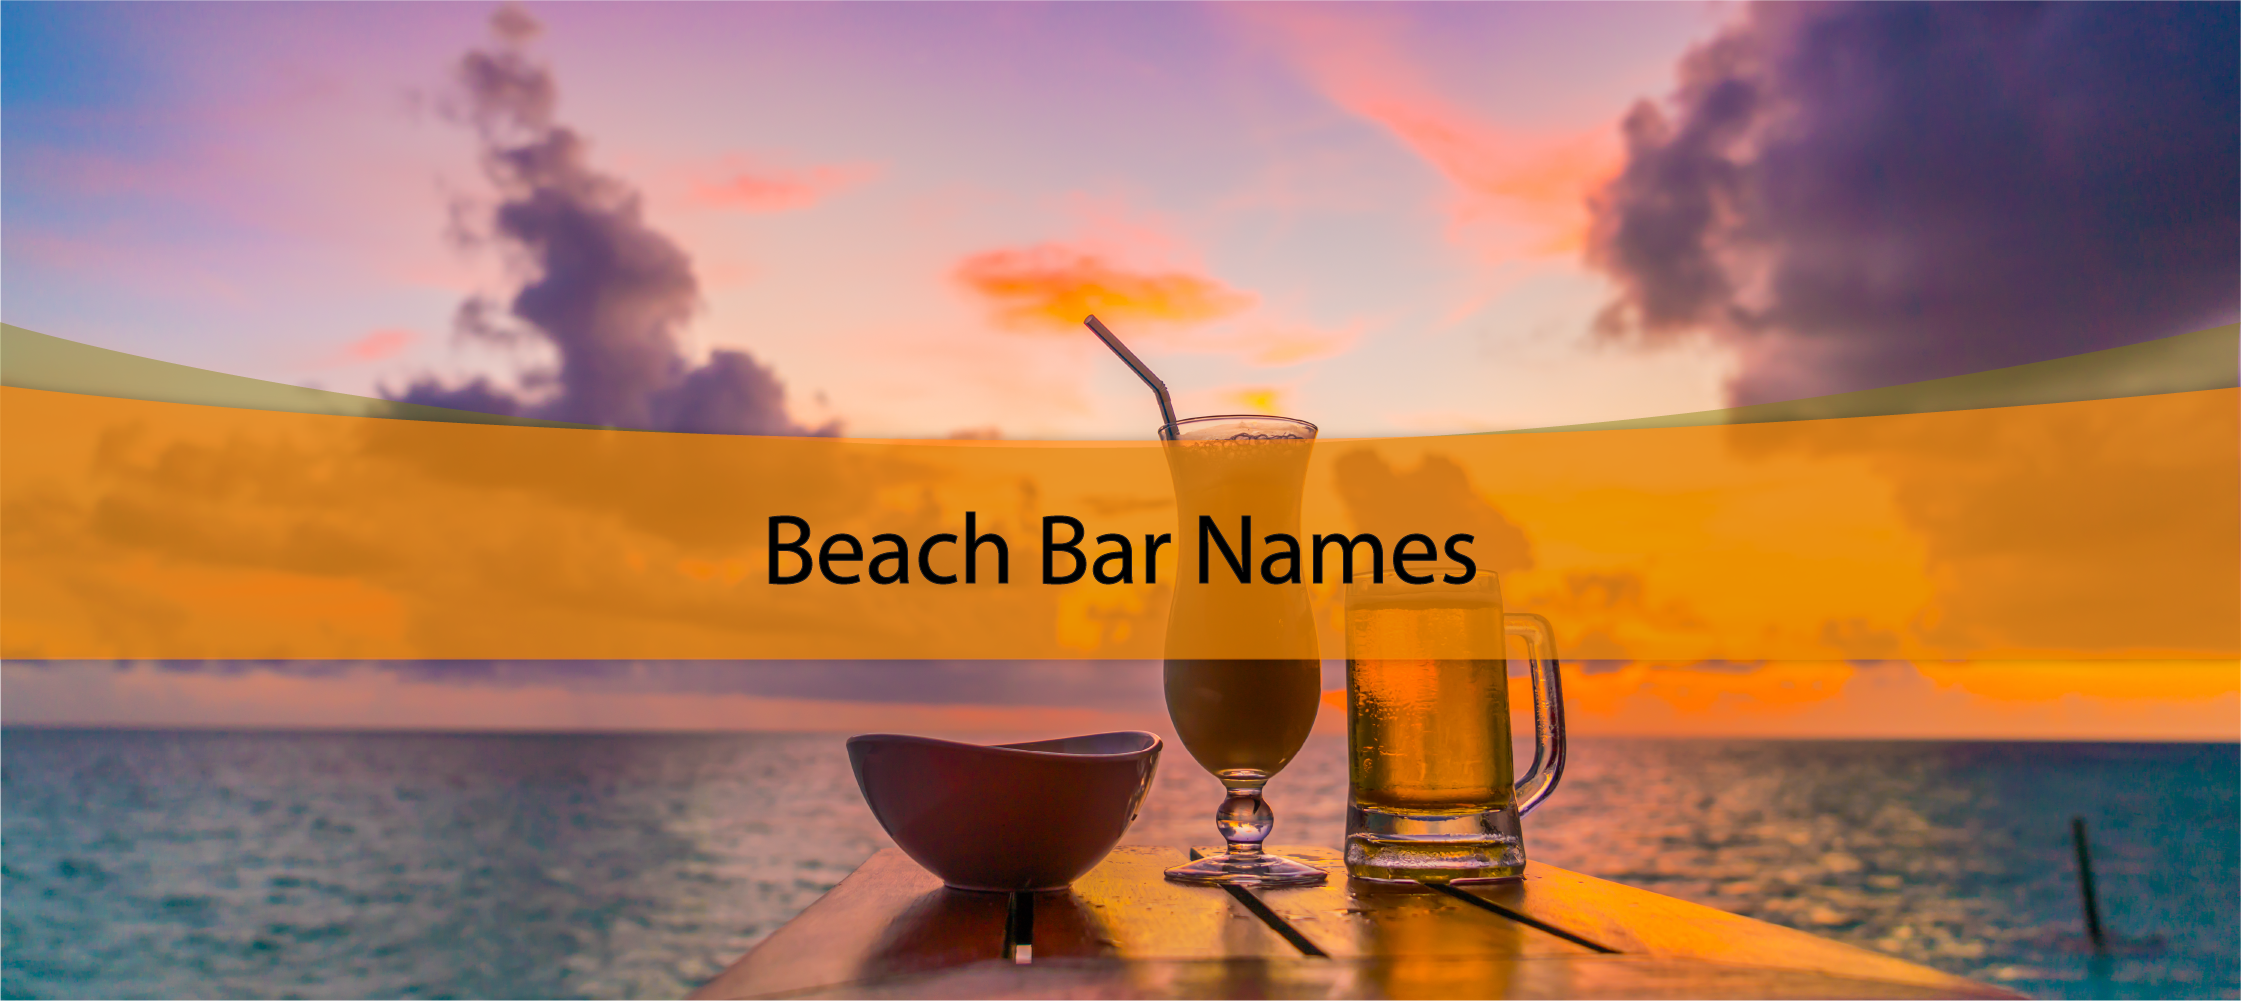 Beach Bar Names